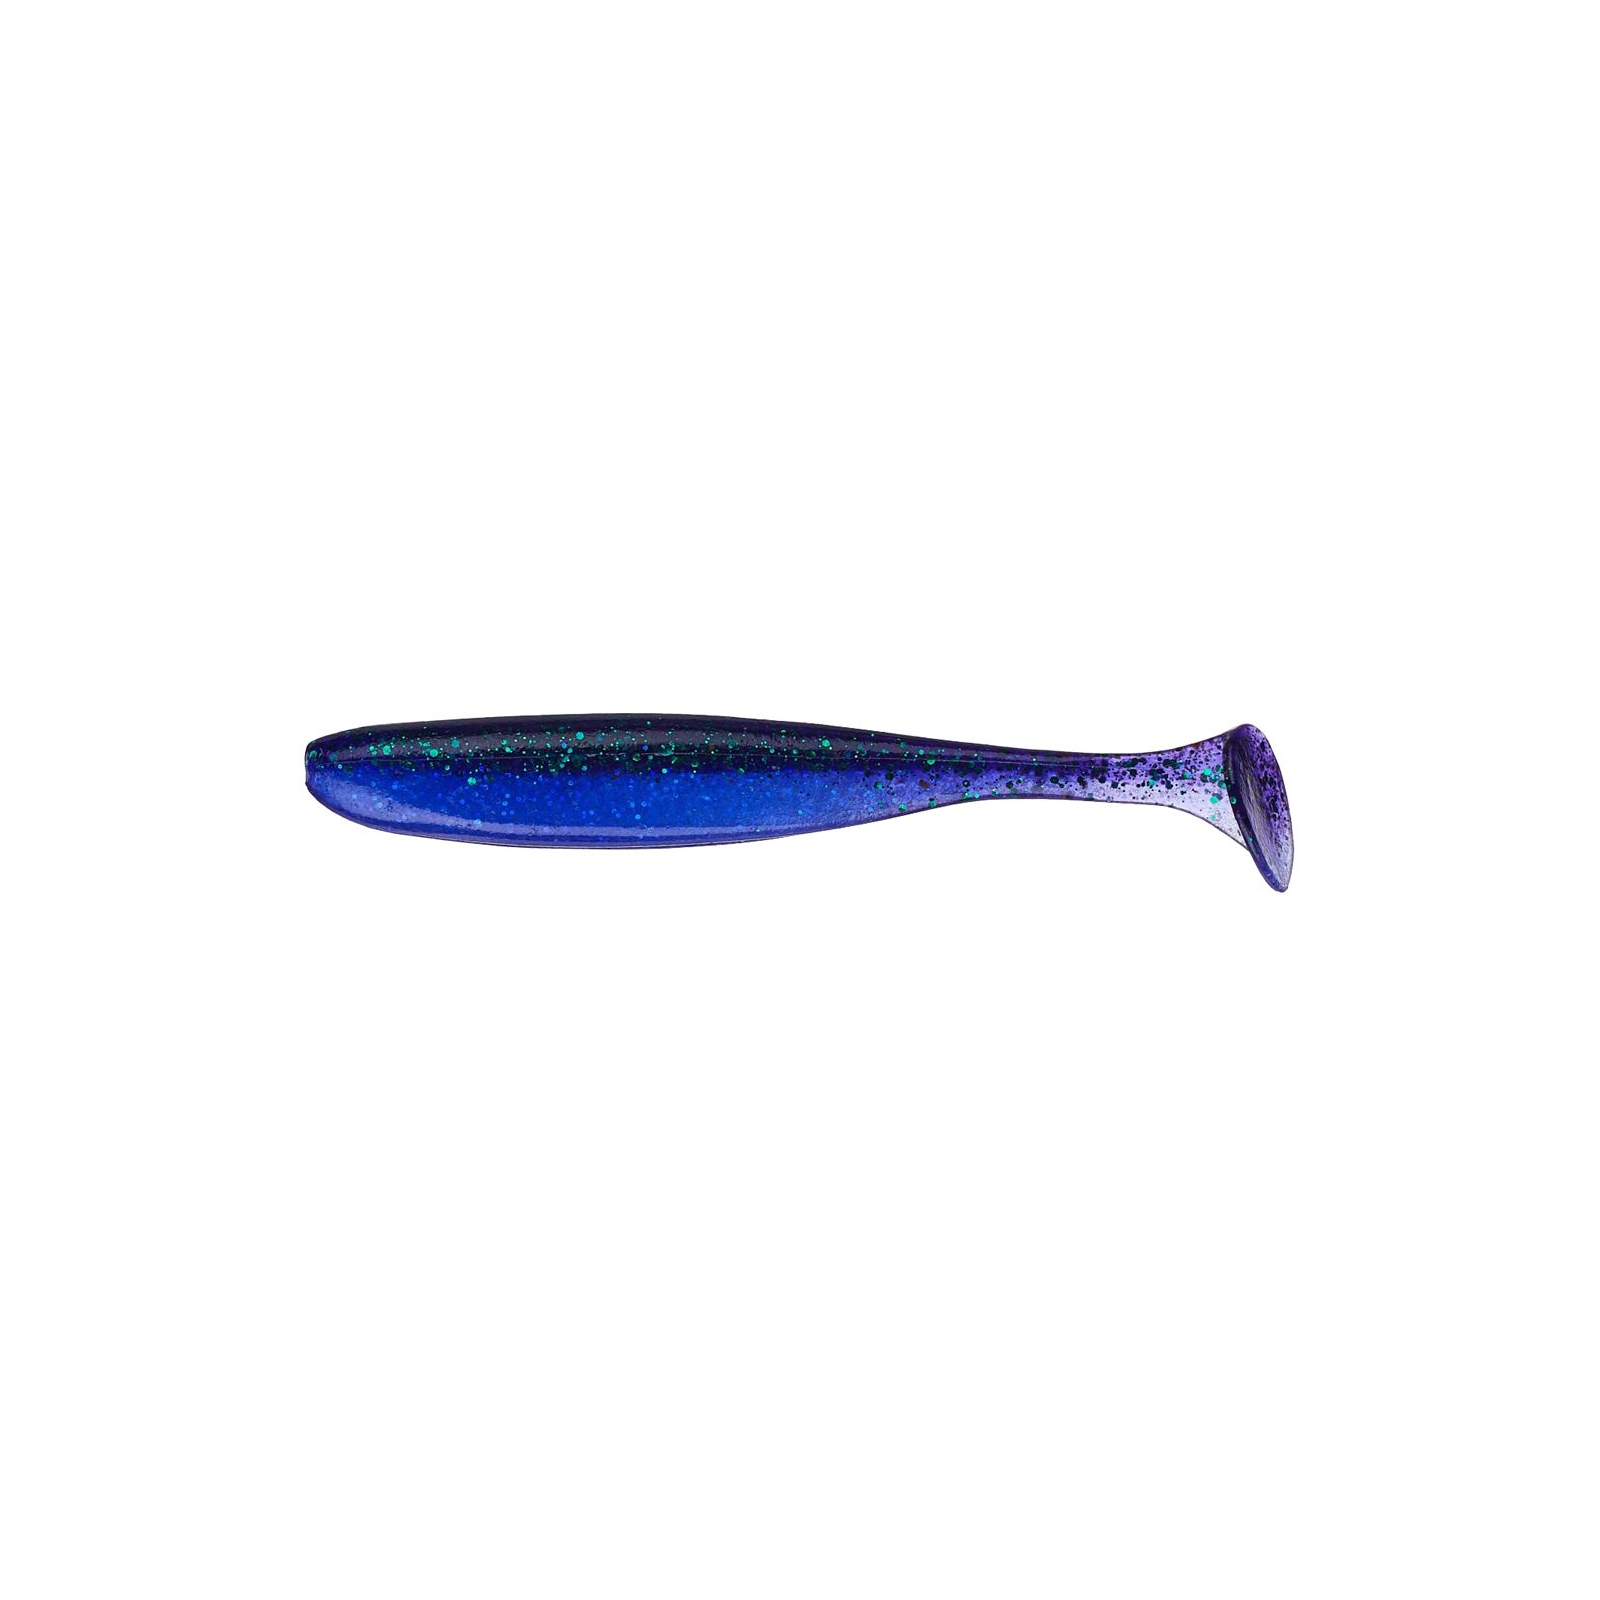 Силикон рыболовный Keitech Easy Shiner 3" (10 шт/упак) ц:408 electric june bug (1551.05.46)